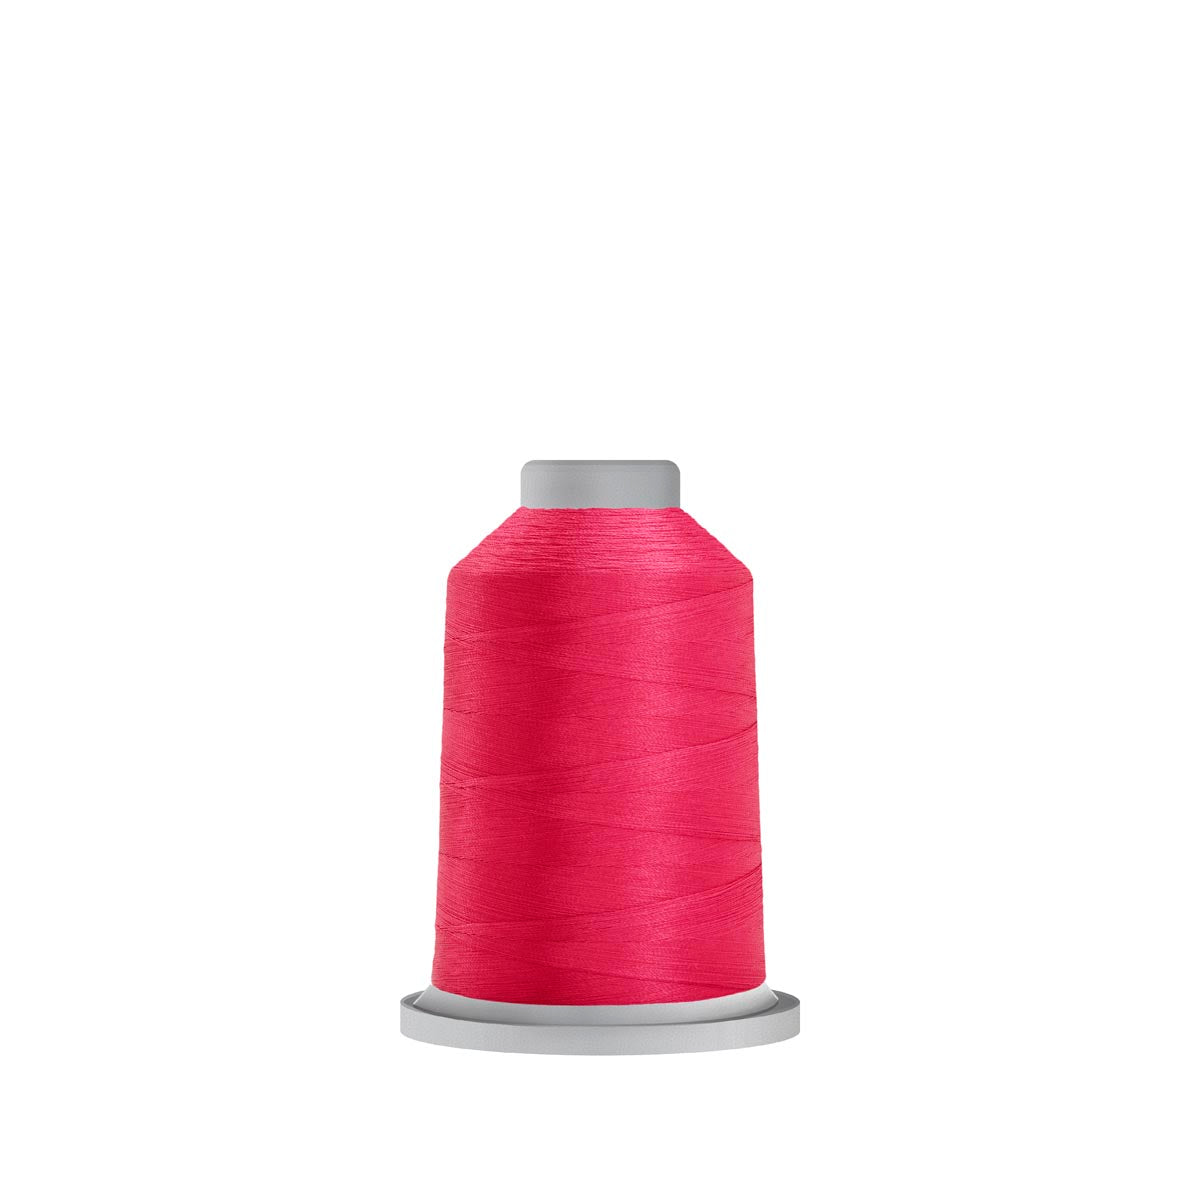 70812 Hot Pink Glide Polyester Thread - 1,100 yards Mini Spool Fil-Tec